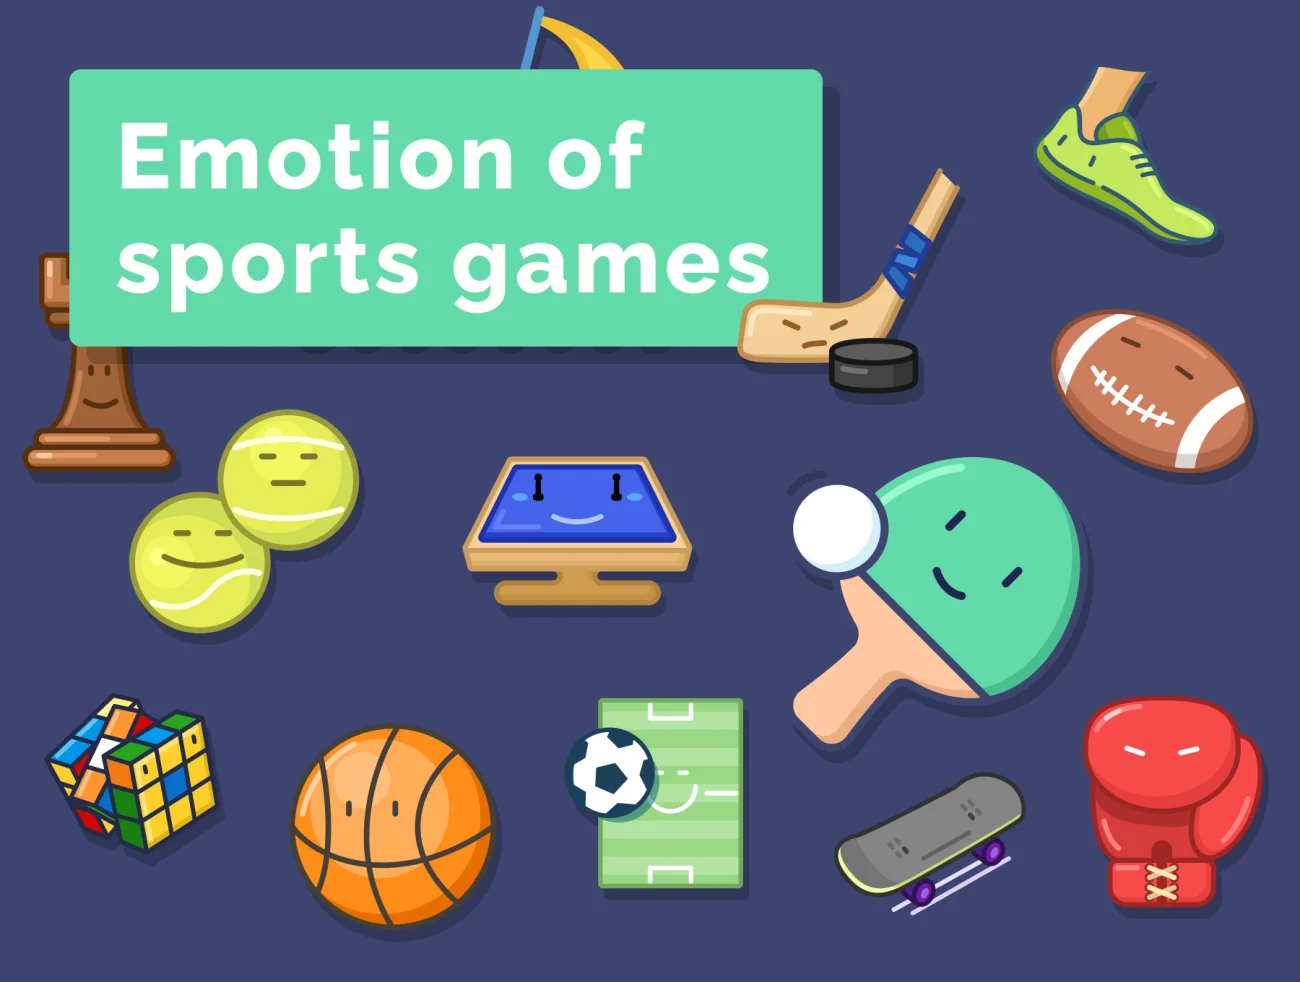 32款抽象拟人情感化体育运动游戏图标集 Emotion of sports games icons set插图1